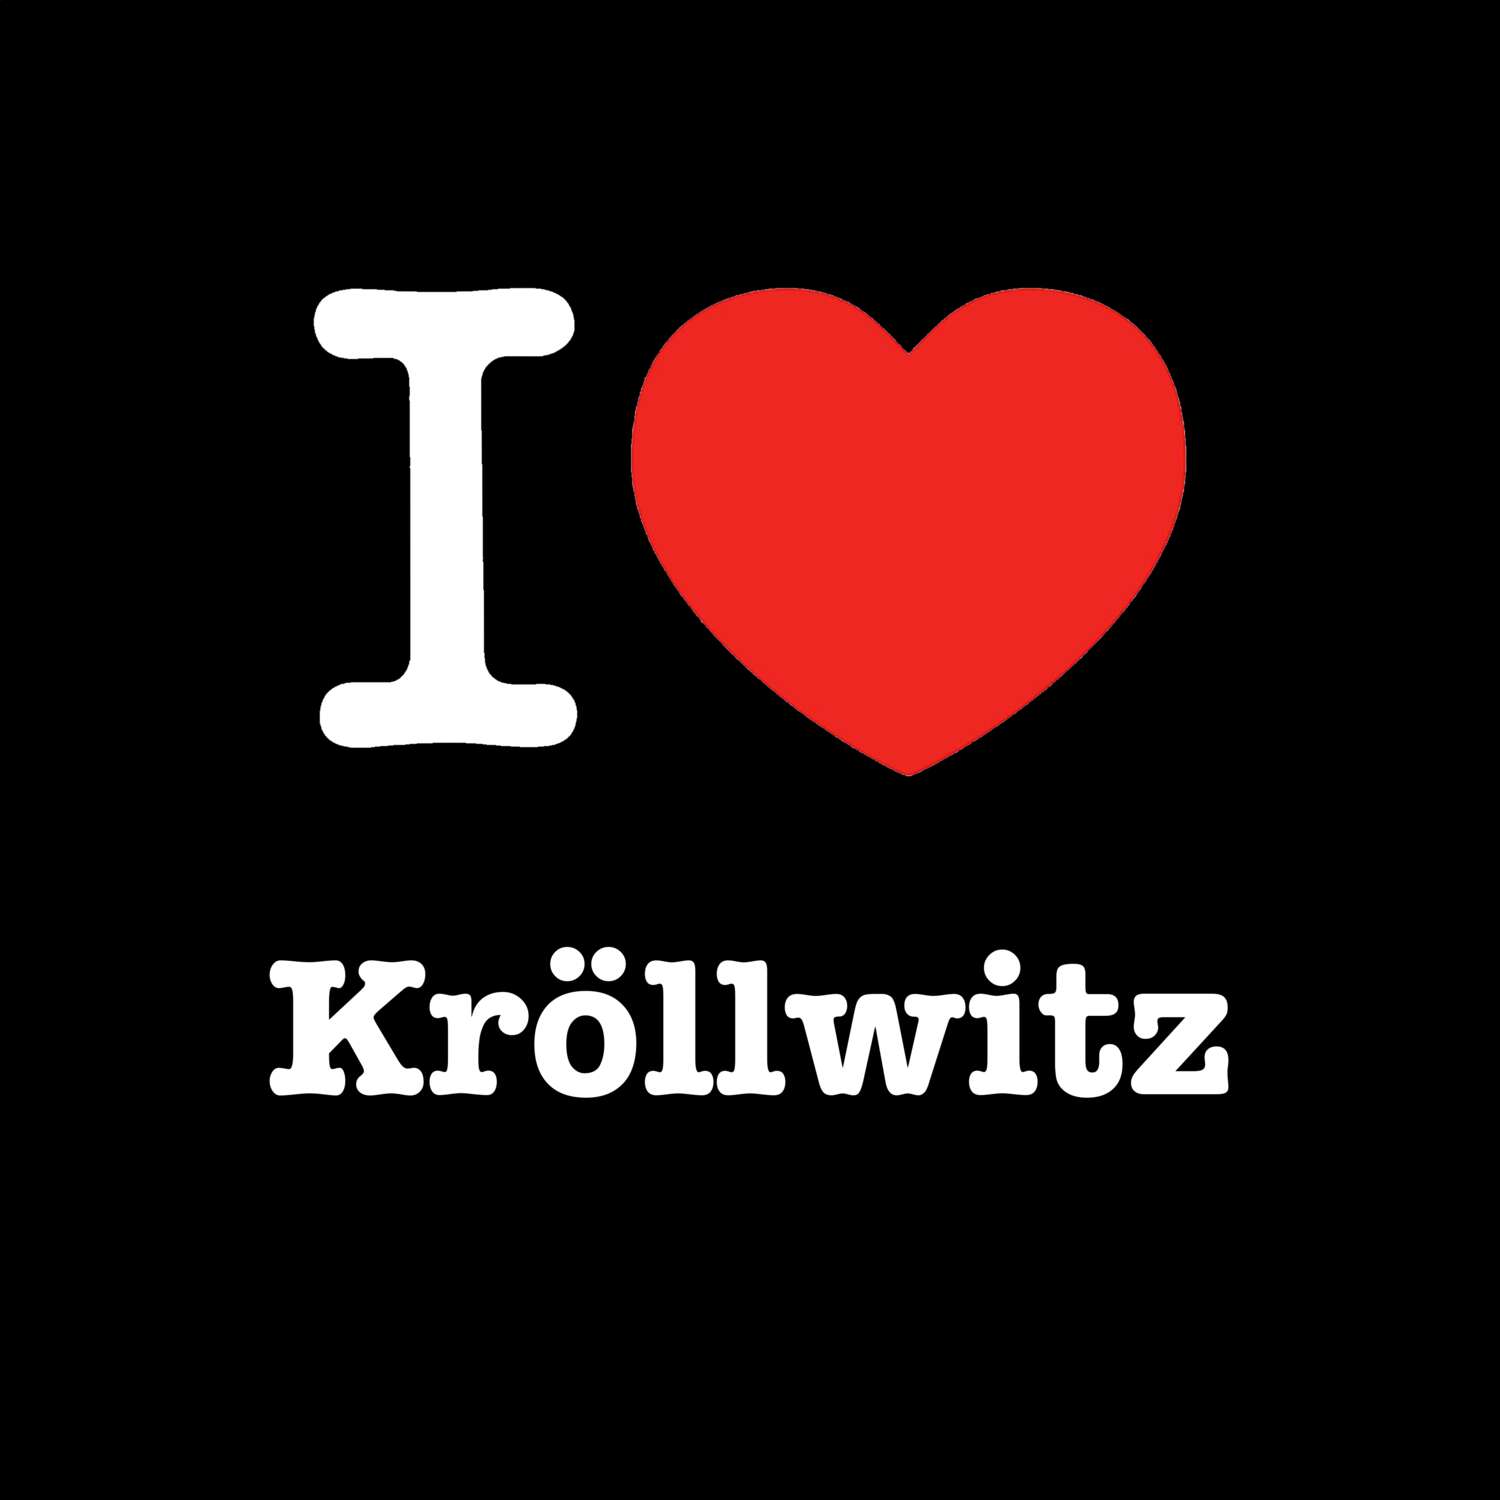 Kröllwitz T-Shirt »I love«